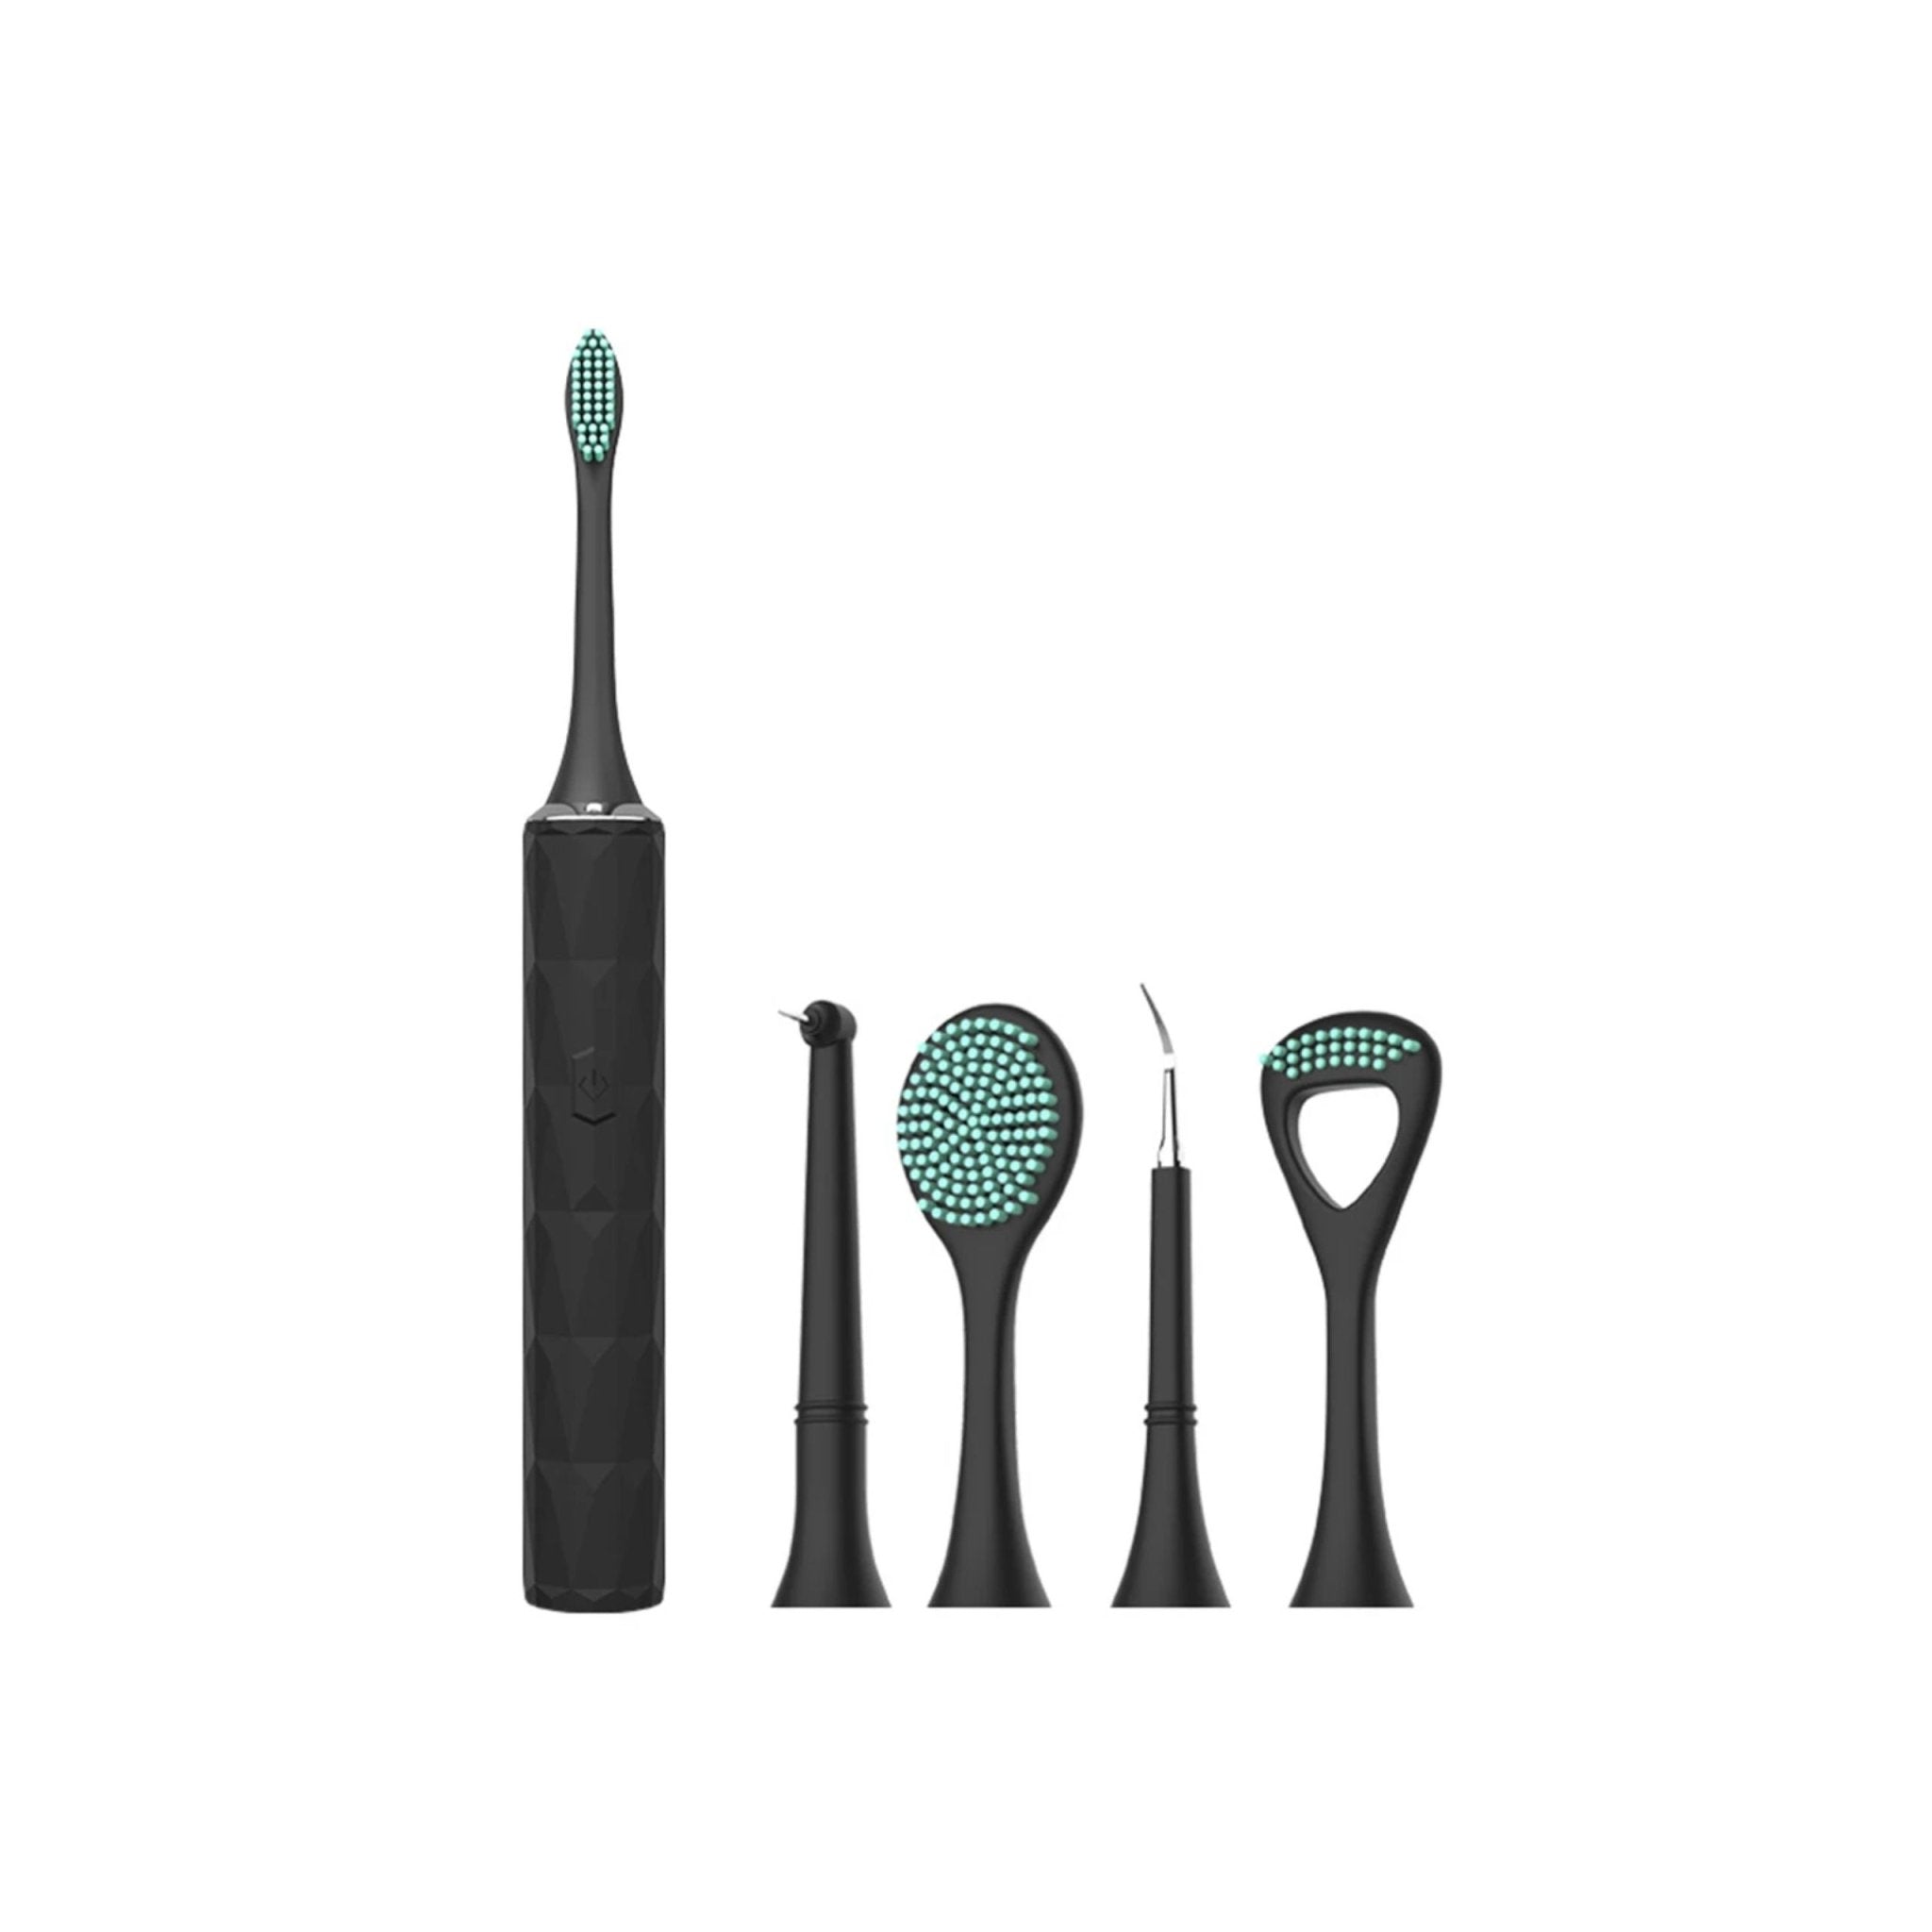 Home-Use Oral Dental Cleaner Set - Black